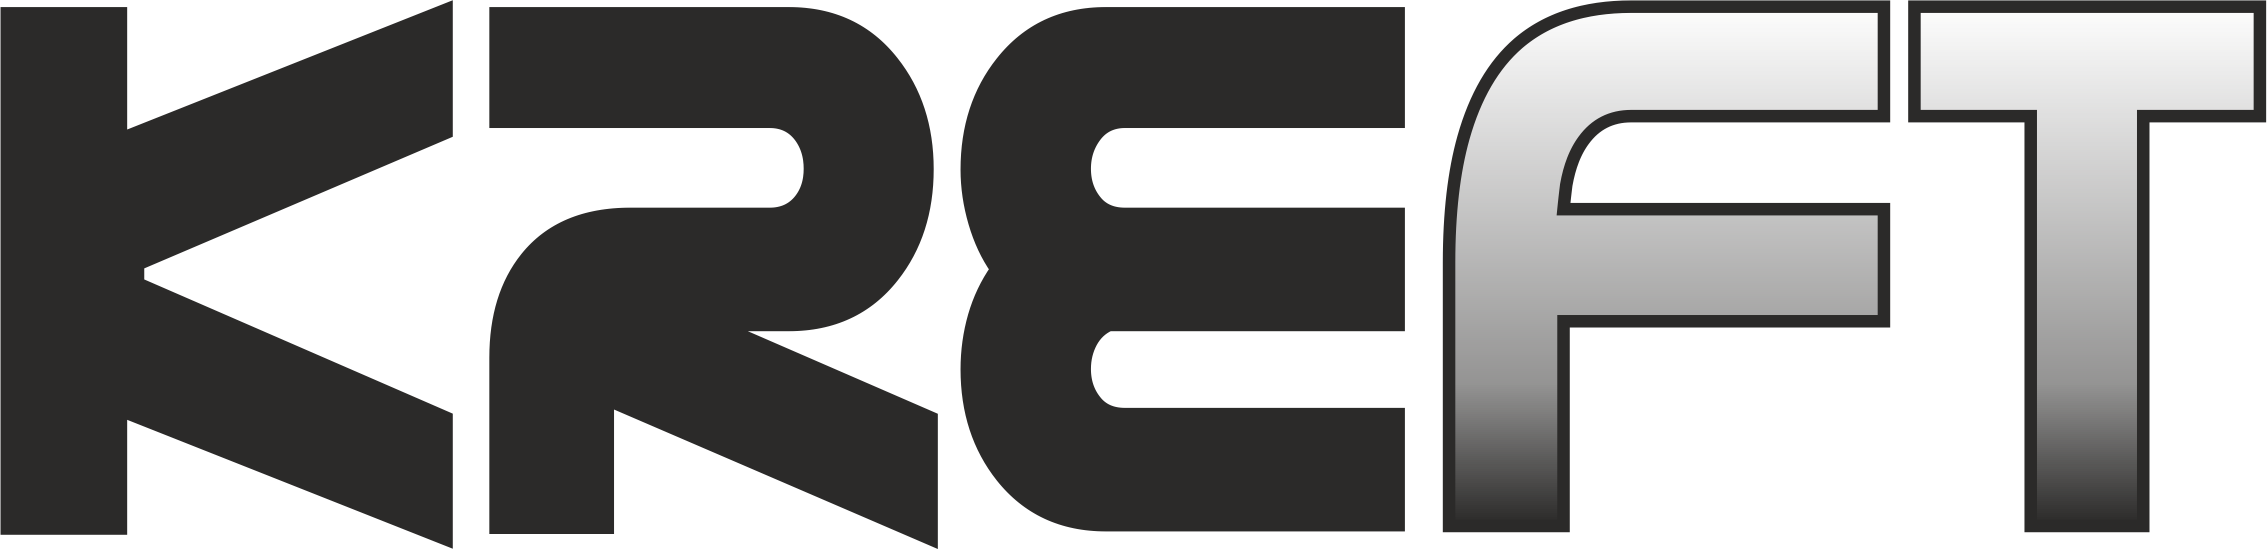 kreft logo